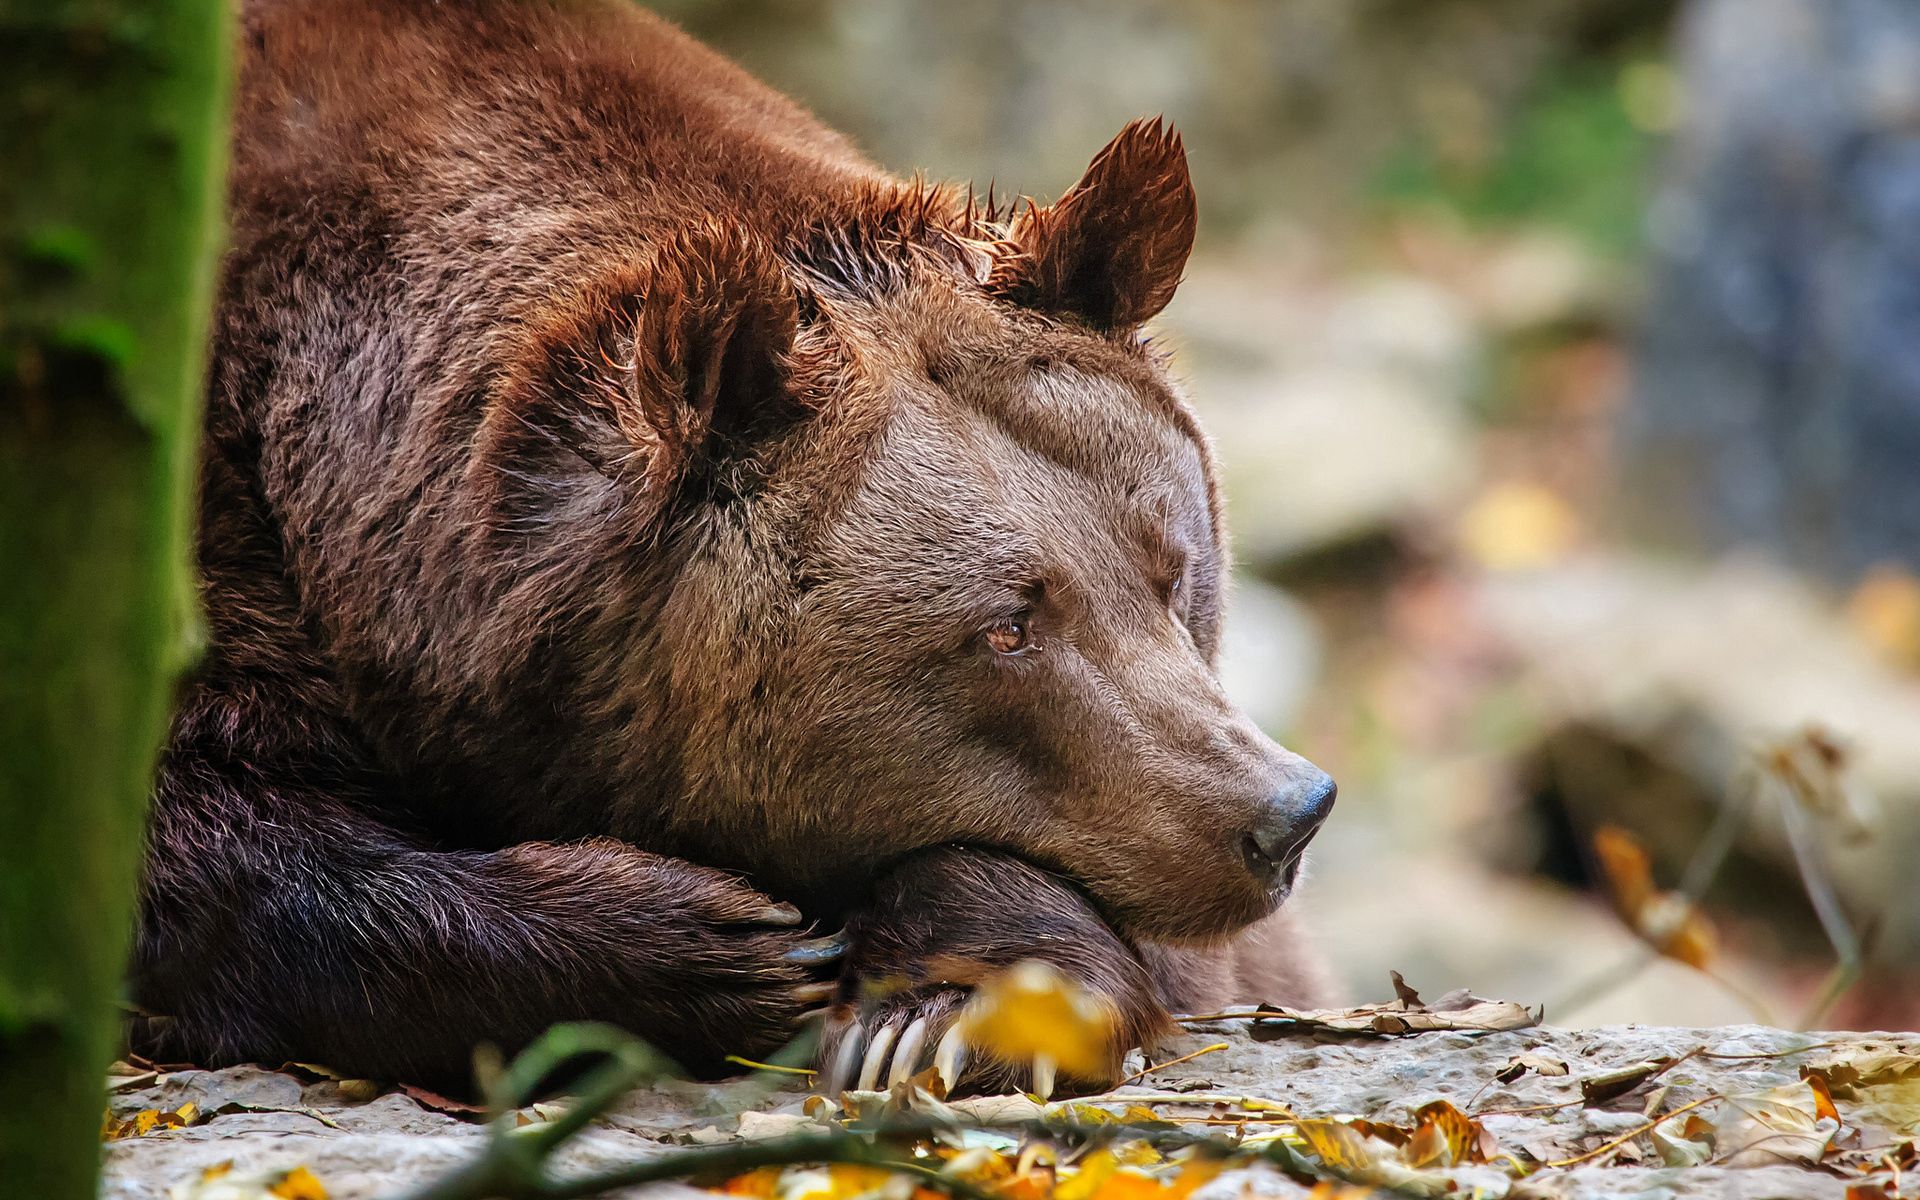 Скачать обои бесплатно Медведь, Сон, Животные, Листья картинка на рабочий стол ПК